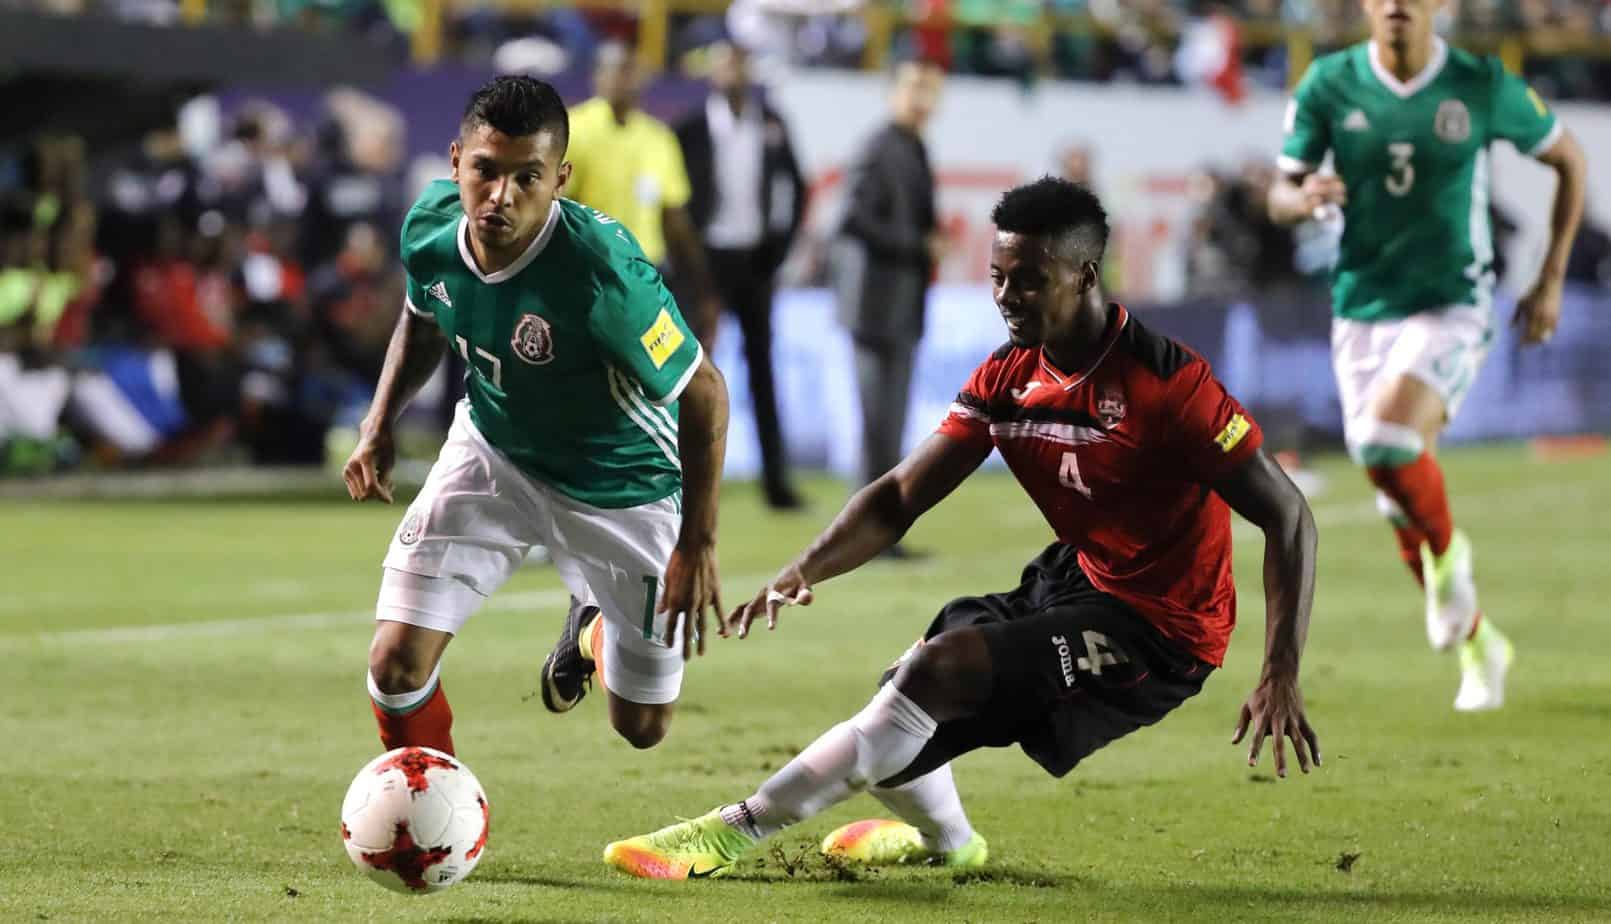 Vista previa y líneas de apuestas de México vs. Trinidad y Tobago